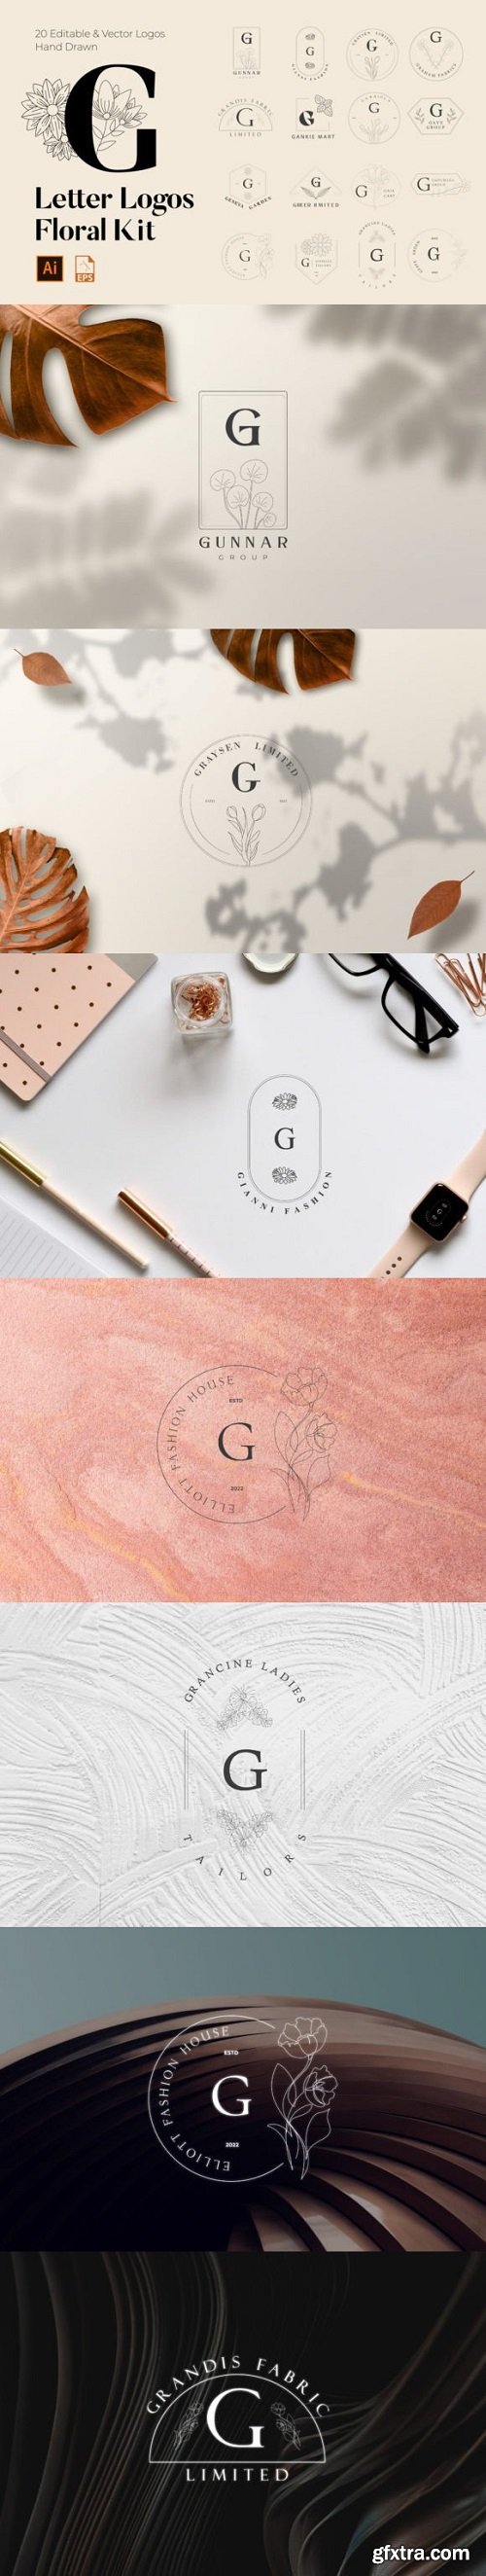 G Letter Floral Handmade Logos Kit